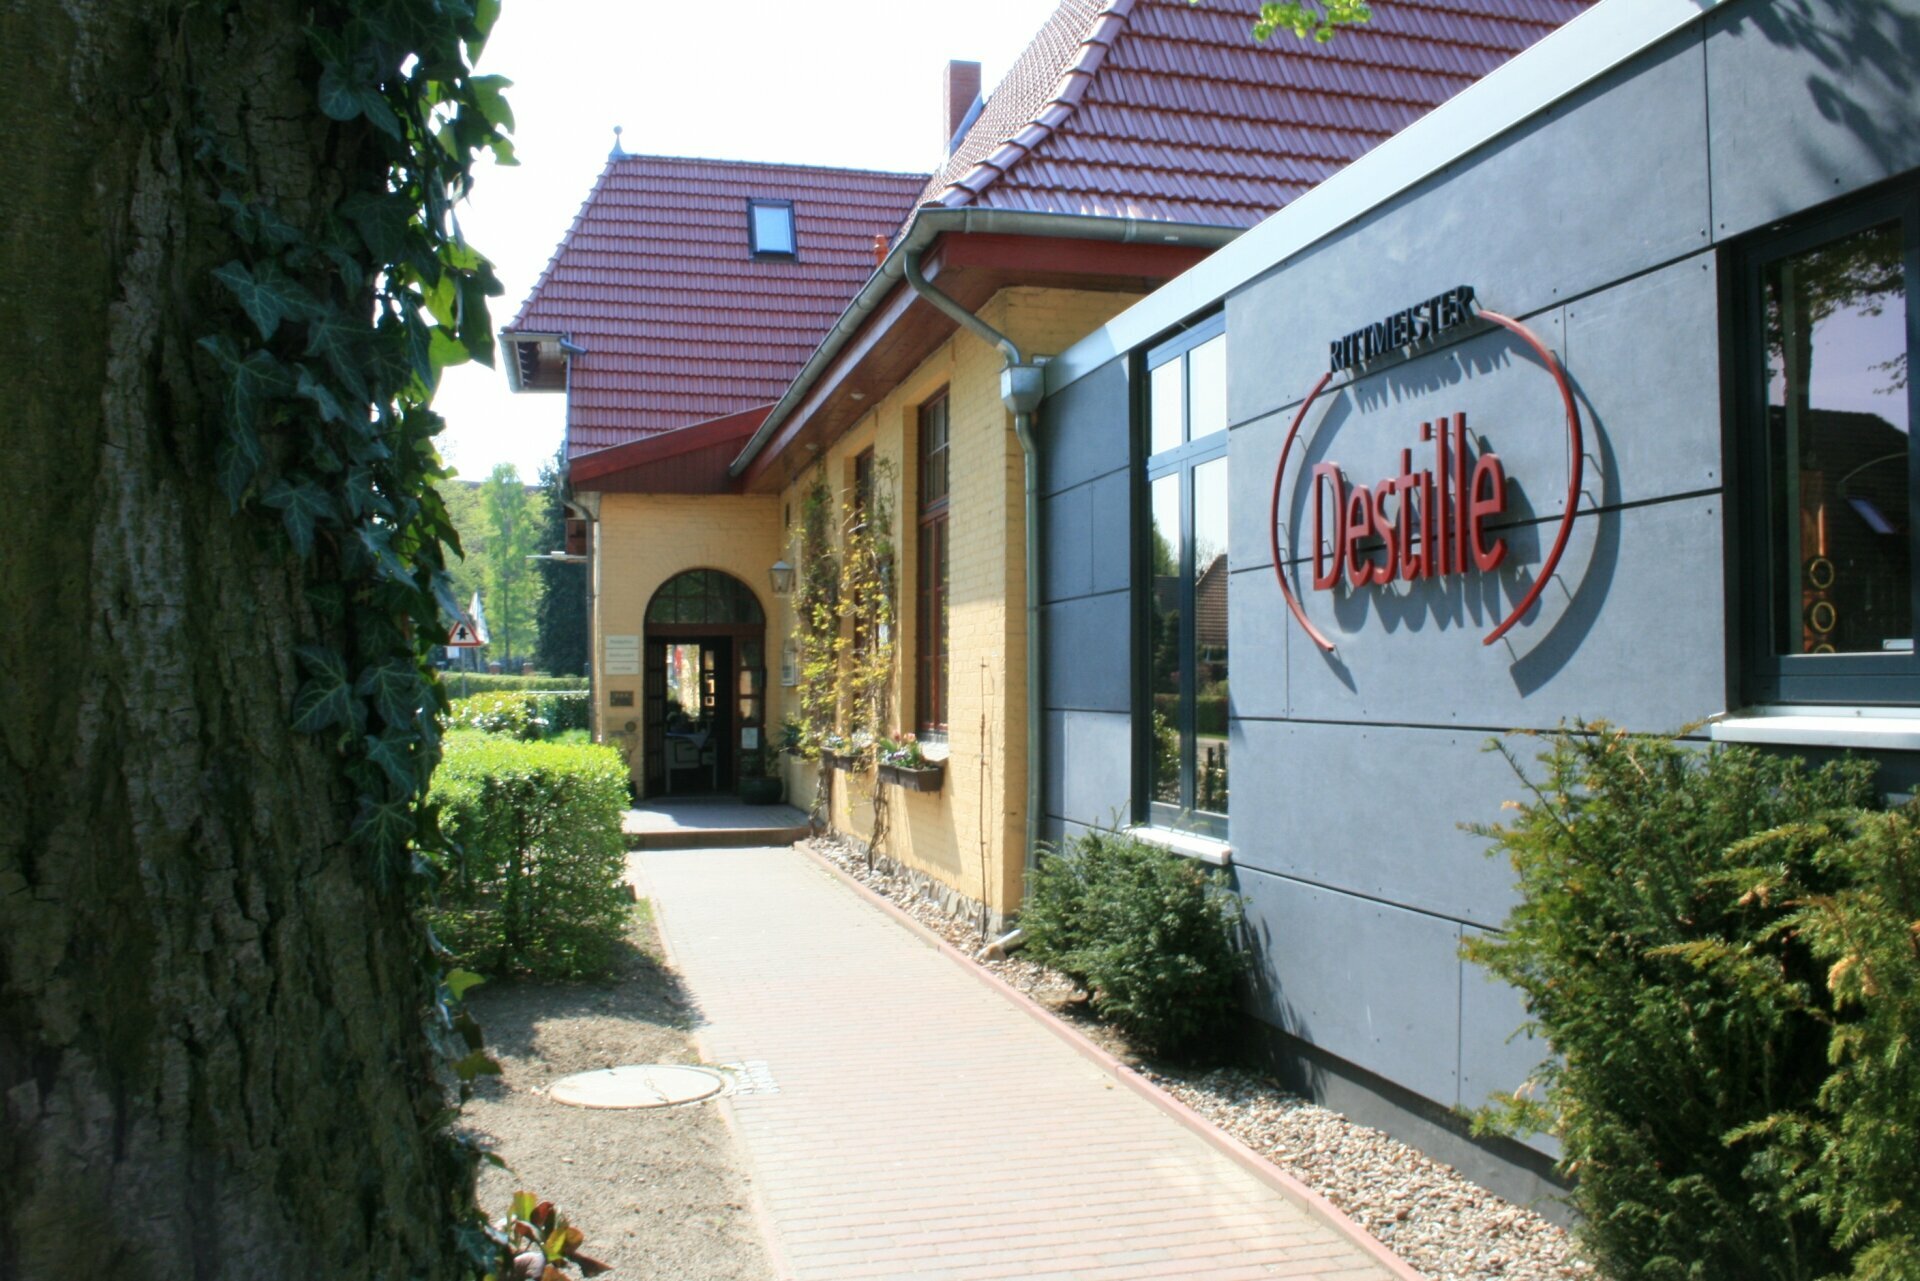 3 Tage Romantik Auszeit Landhotel Rittmeister in Rostock, Mecklenburg-Vorpommern inkl. Halbpension